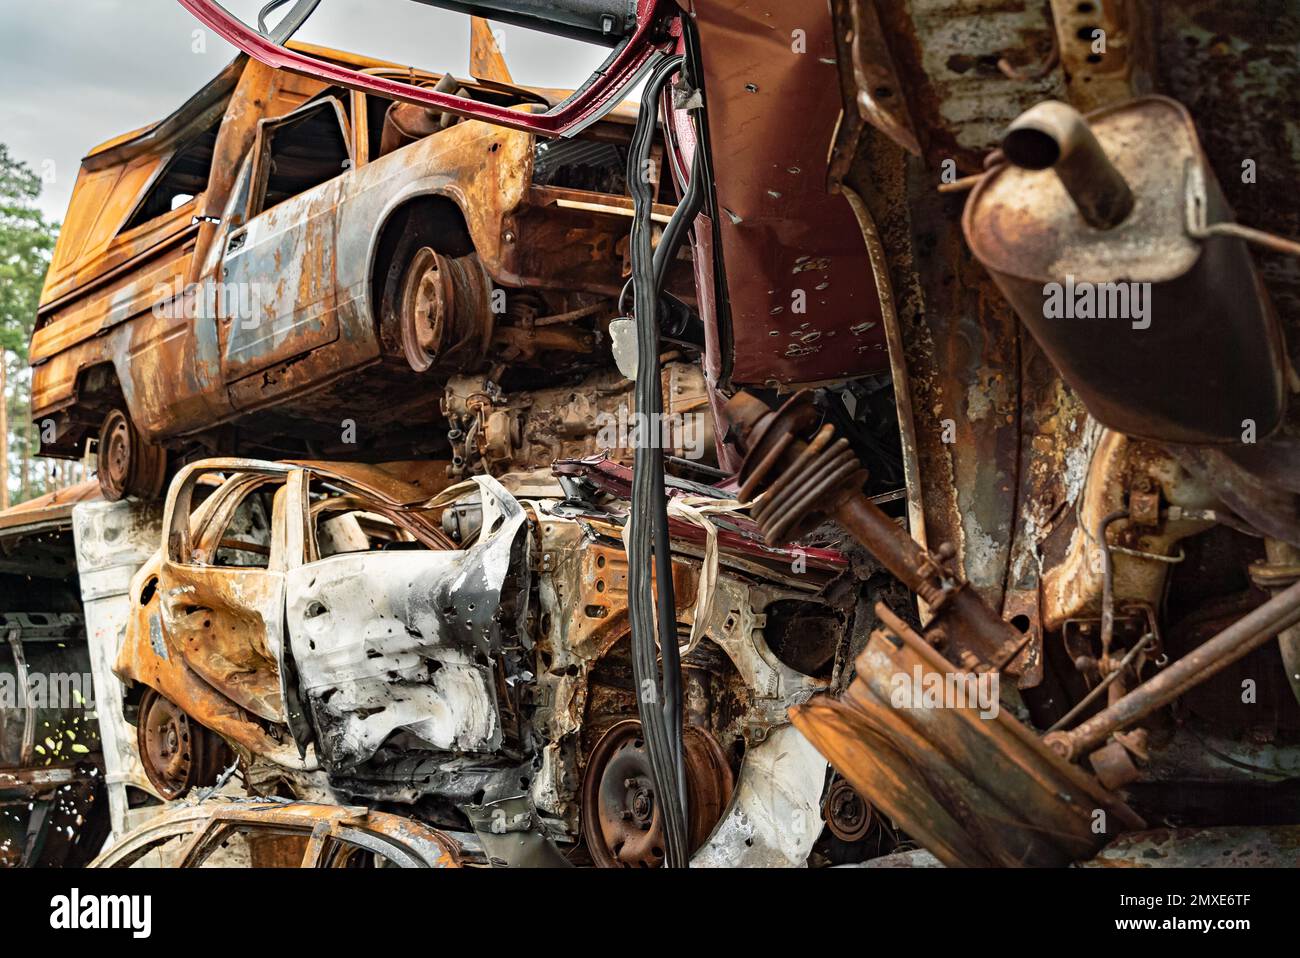 Irpin, Bucha district, Ukraine - war-destroyed cars Stock Photo